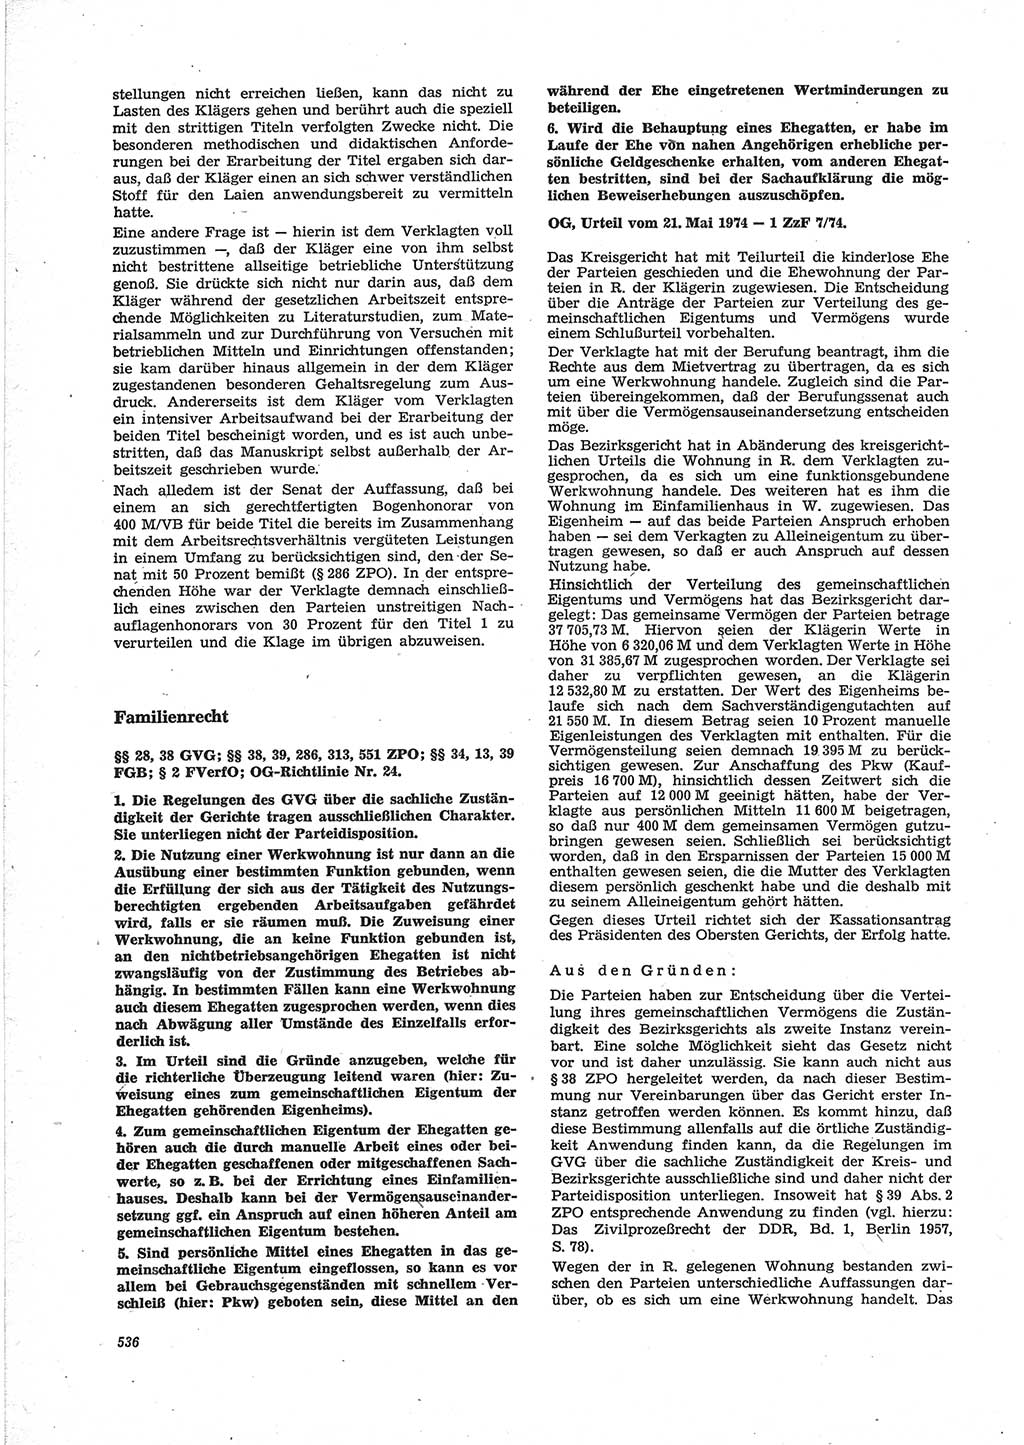 Neue Justiz (NJ), Zeitschrift für Recht und Rechtswissenschaft [Deutsche Demokratische Republik (DDR)], 28. Jahrgang 1974, Seite 536 (NJ DDR 1974, S. 536)